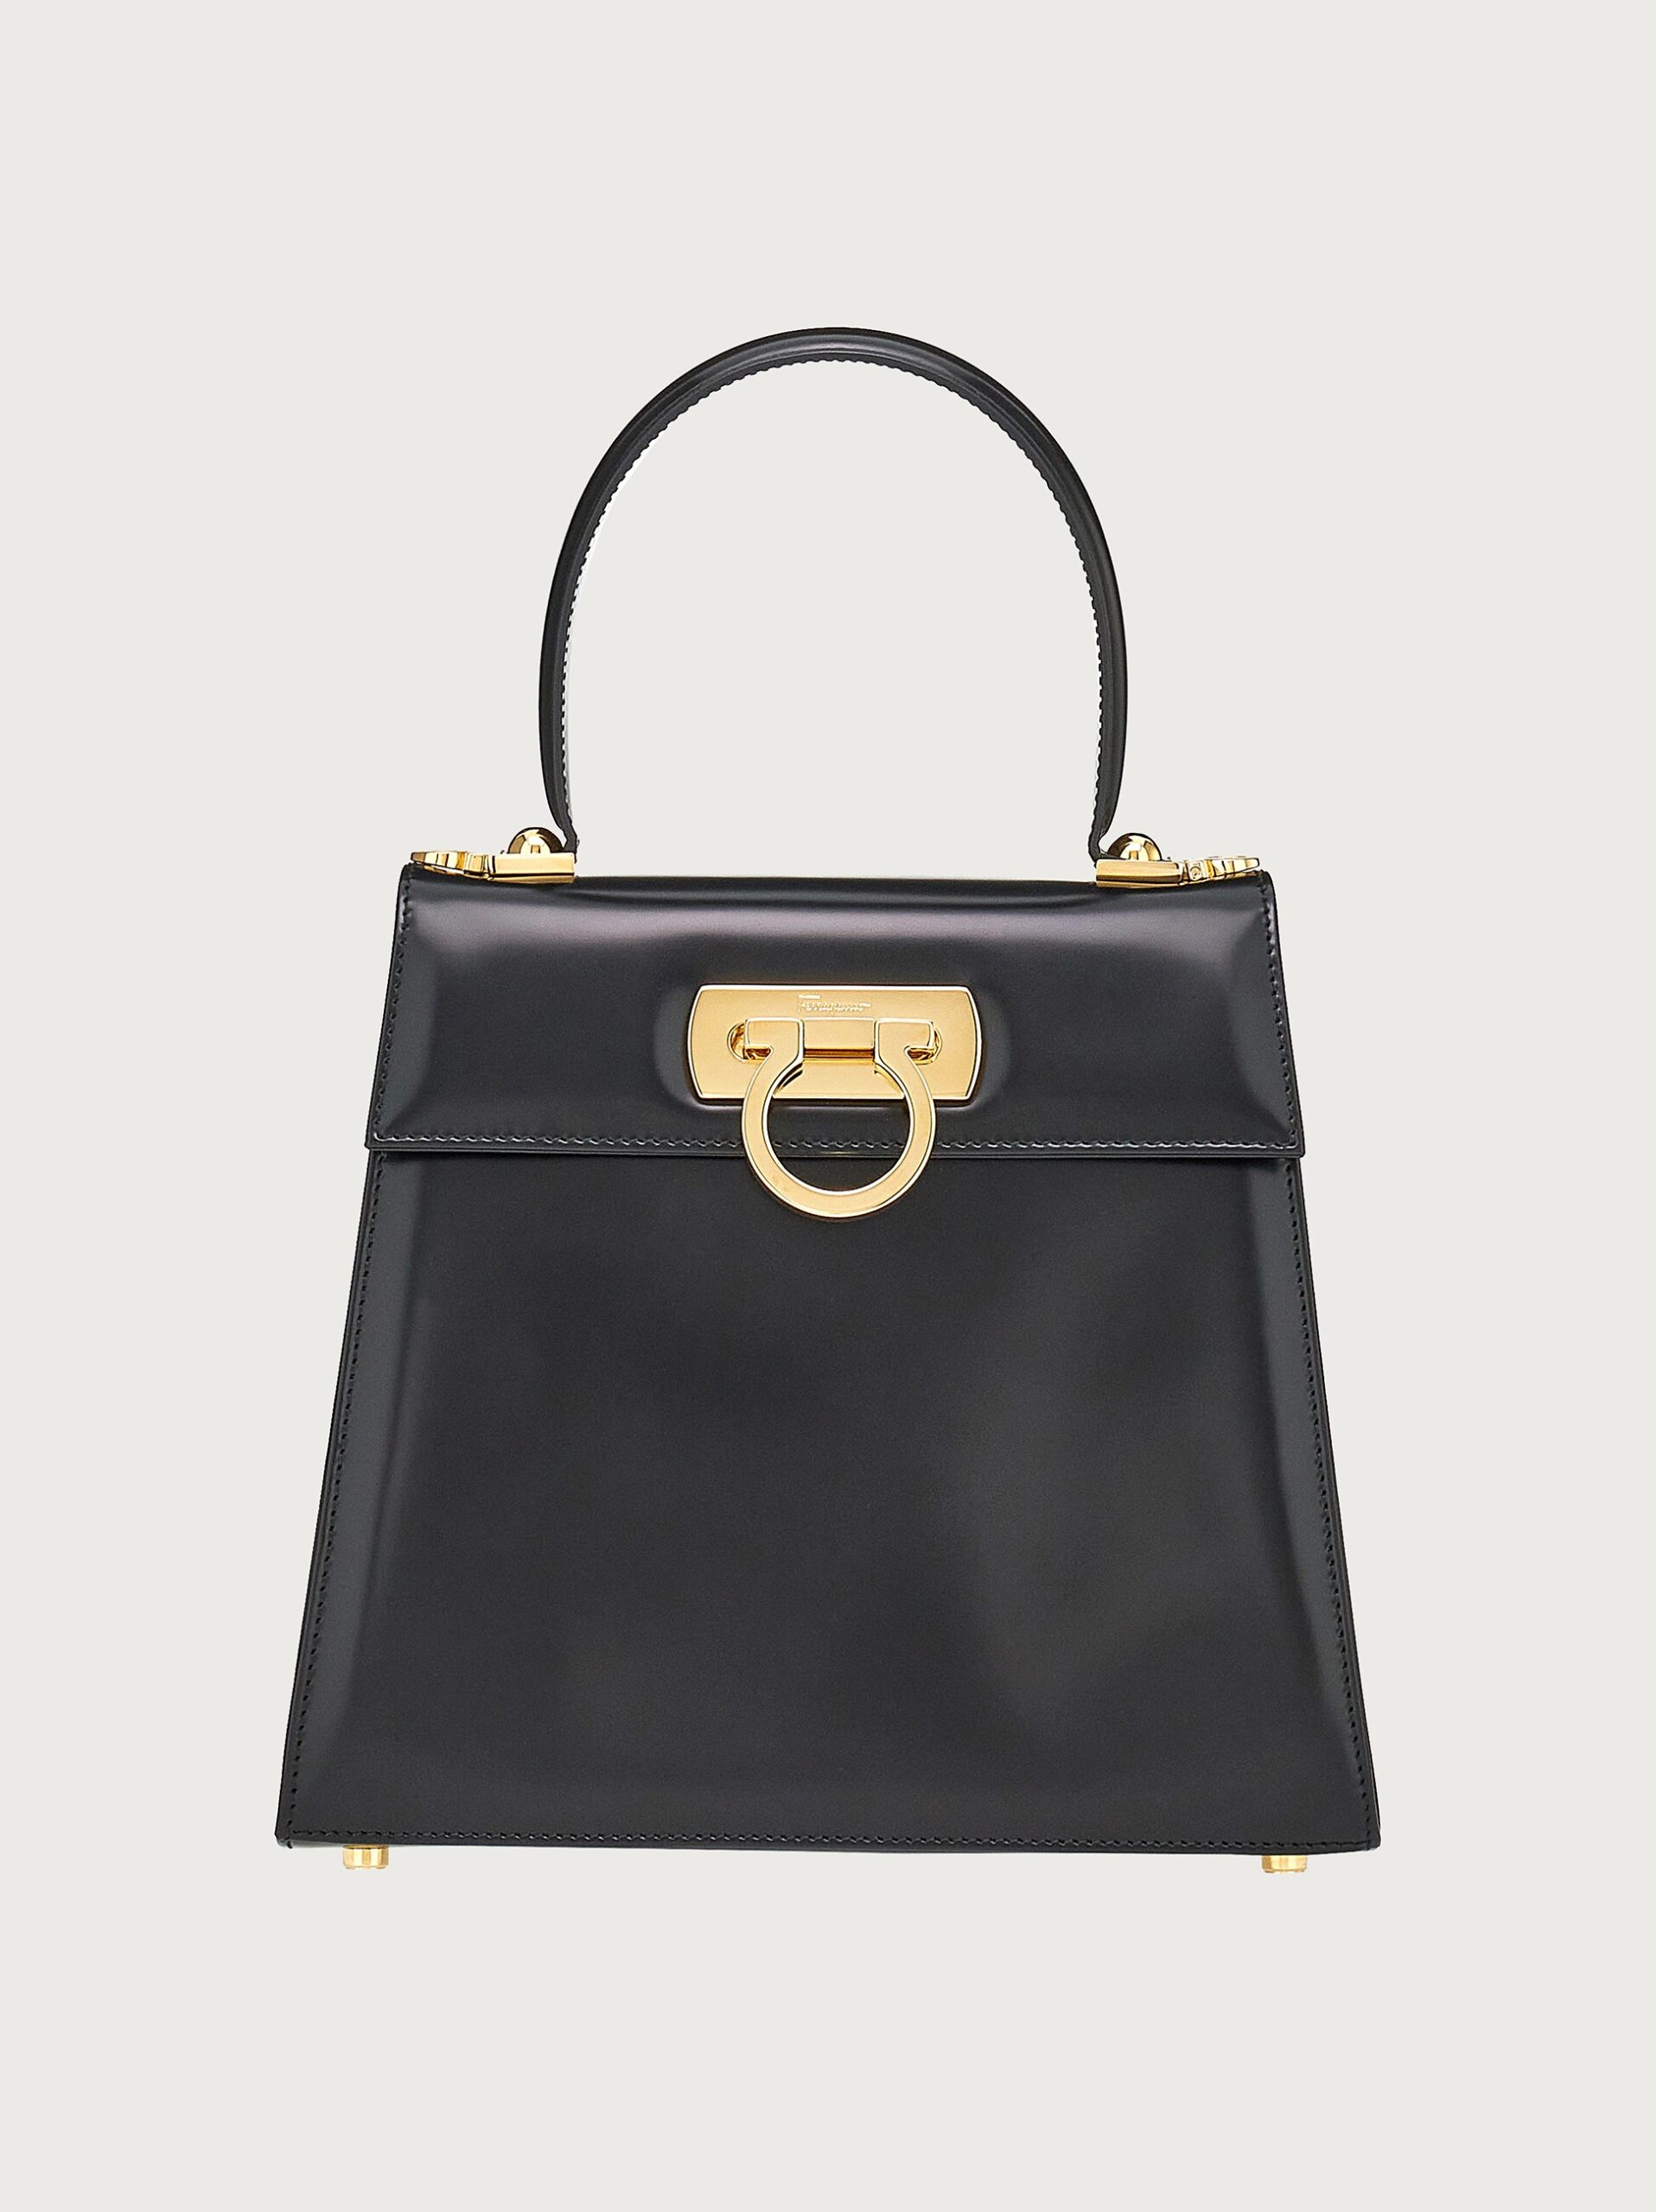 Top 9 Luxury Bags to Splurge On In 2023